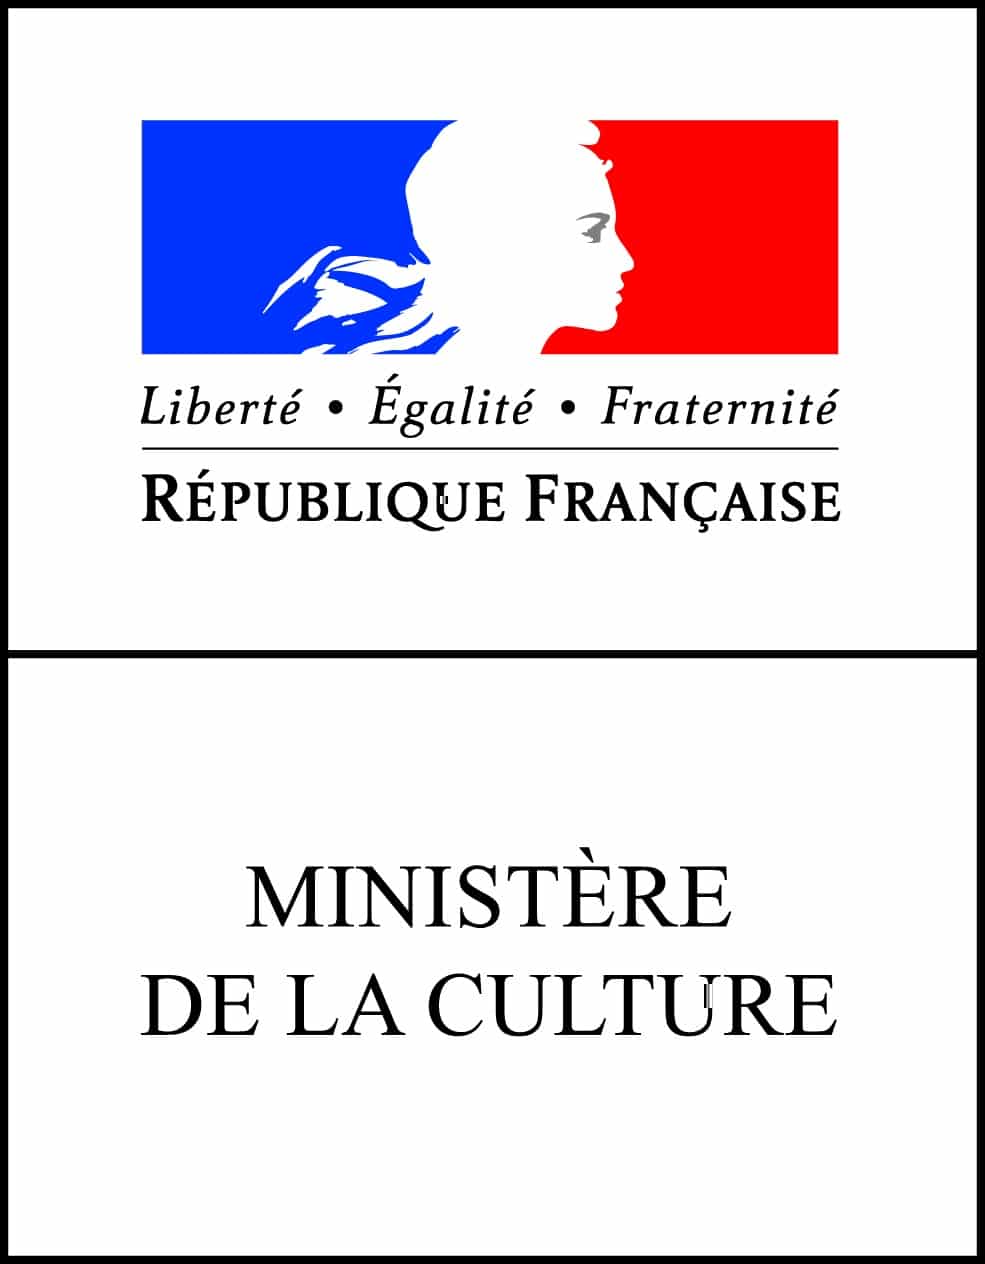 Comment joindre le Ministère de la culture en France ?
